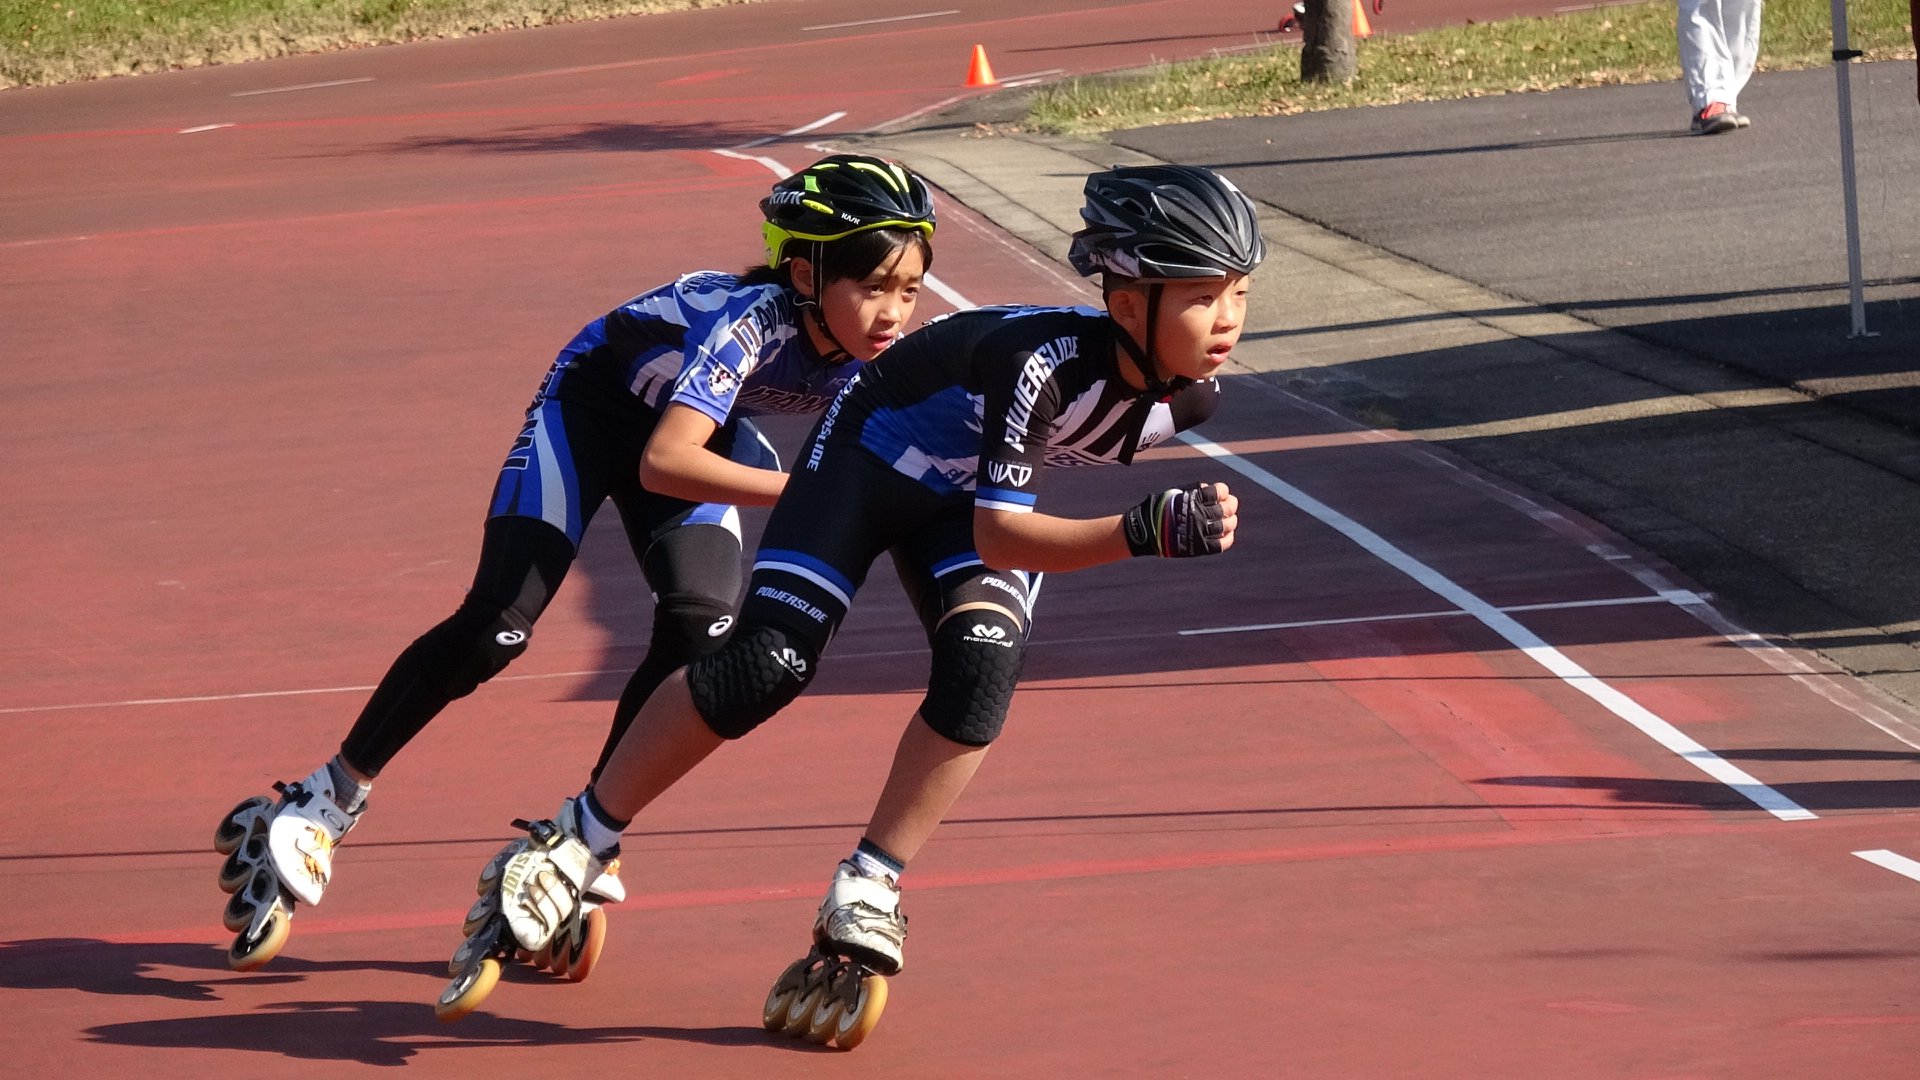 西日本ローラースケートスピード大会2018年小学生の部